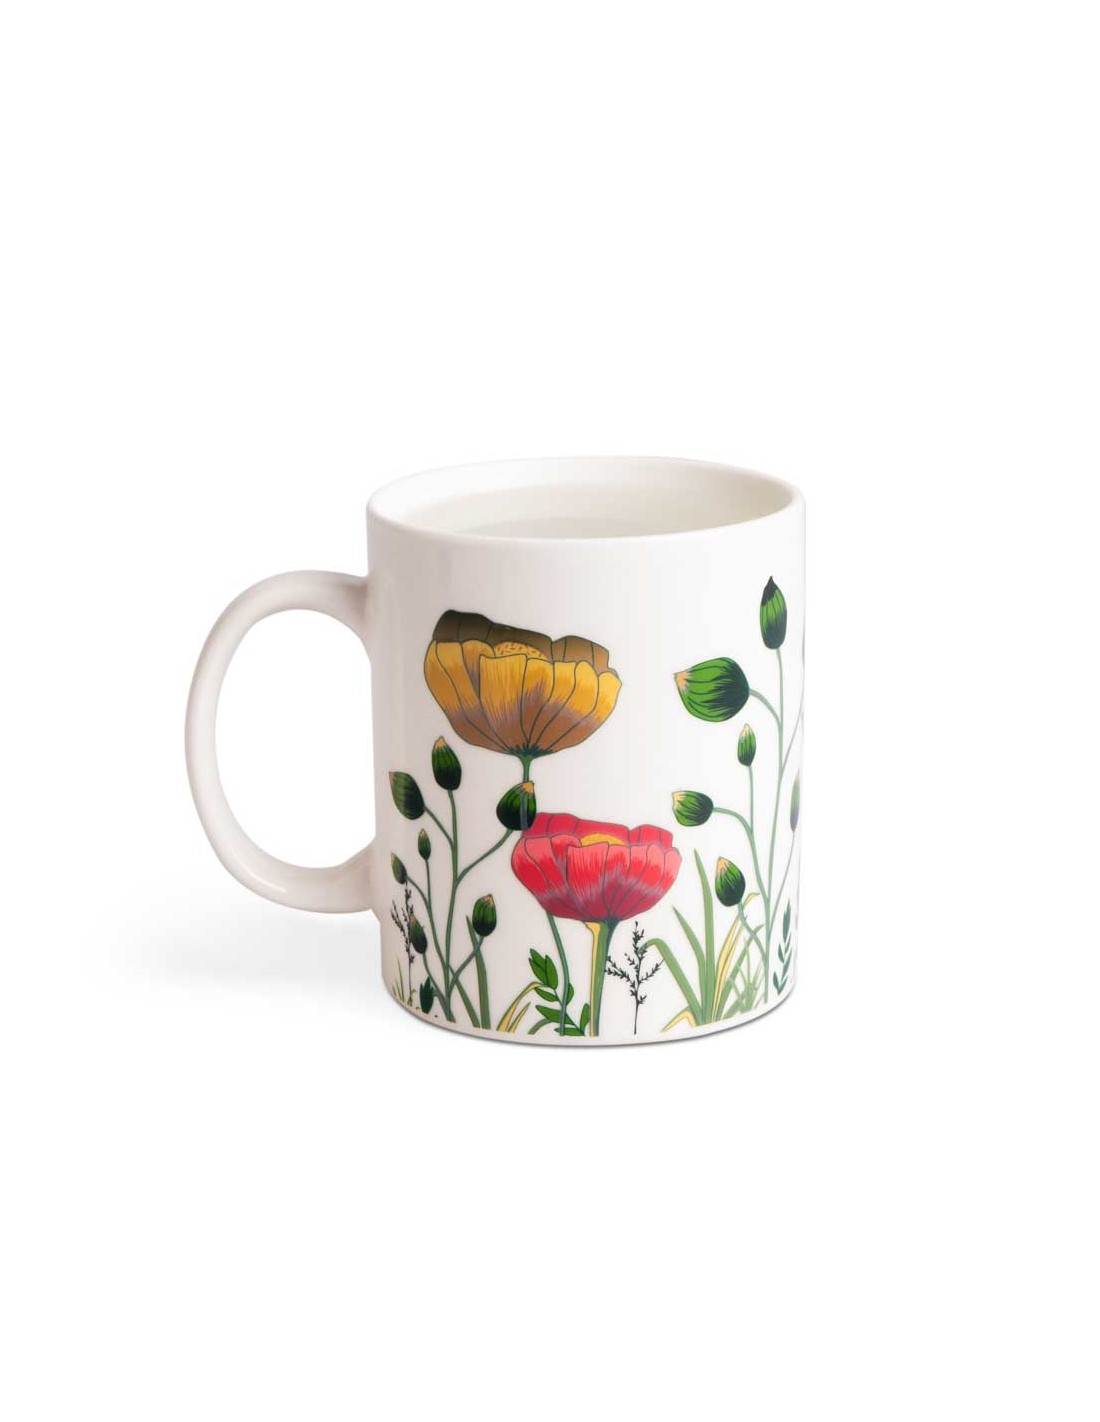 Tazza mug cambia colore con disegno fiori - BLOOM by Balvi│Balena Design